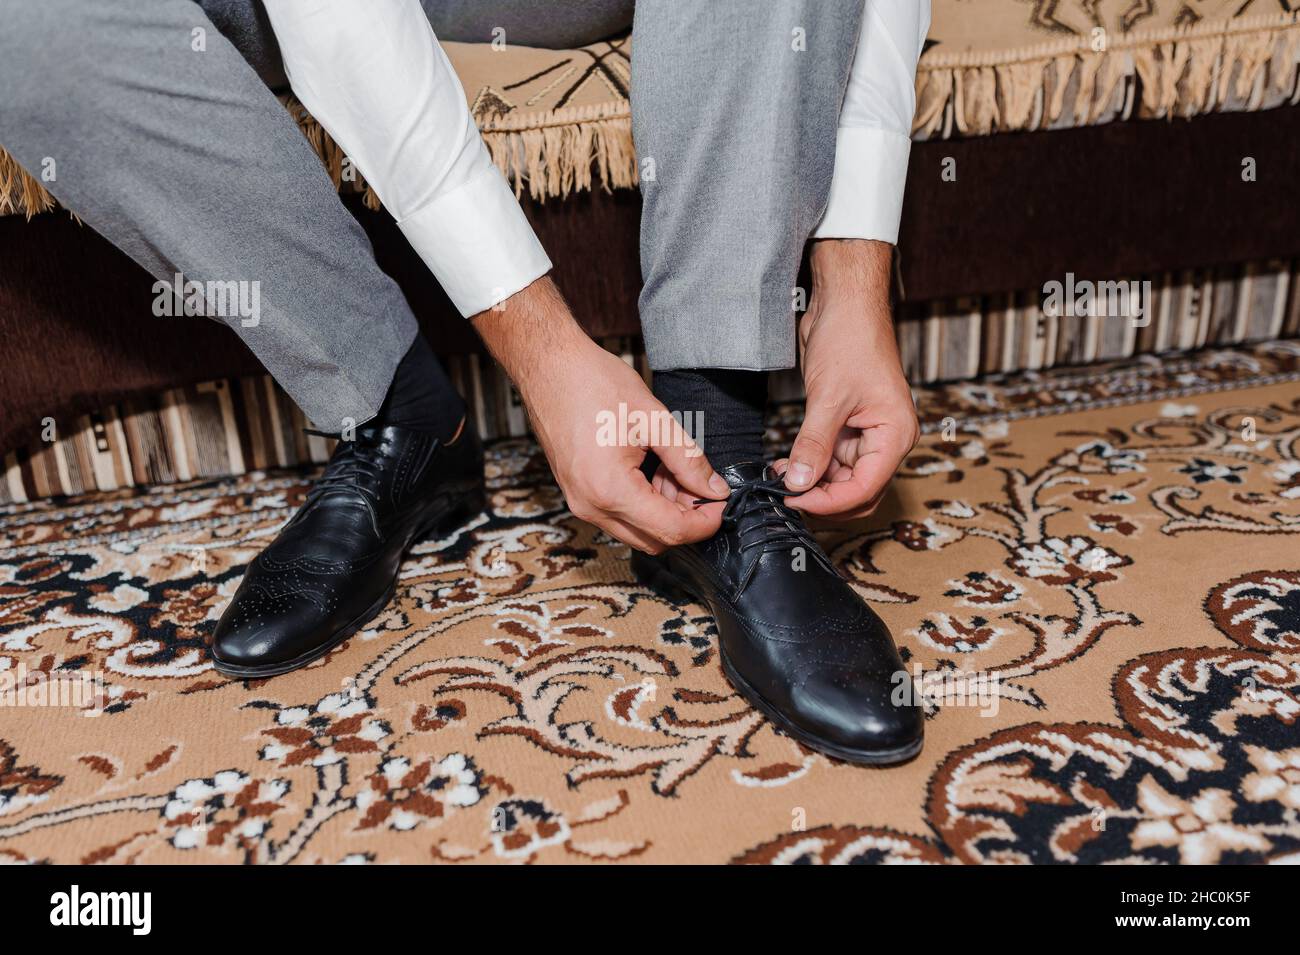 Ein Mann trägt in Nahaufnahme schwarze Schuhe Stockfotografie - Alamy